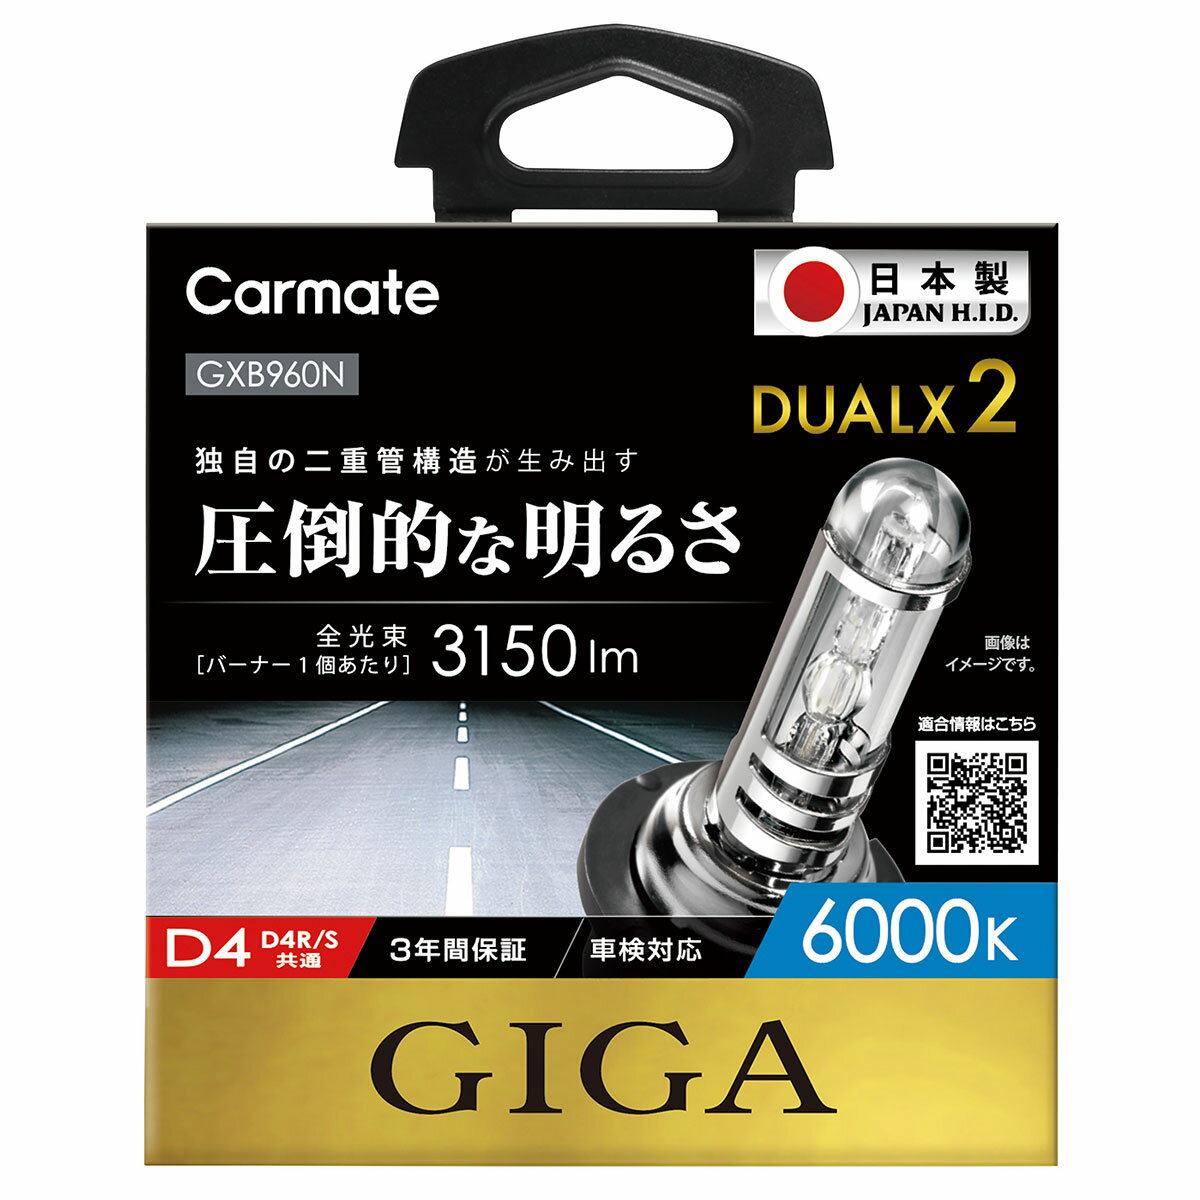 【在庫有】CARMATE カーメイト GIGA デュアルクス2 6000K D4R/Sバーナー ホワイト GXB960N